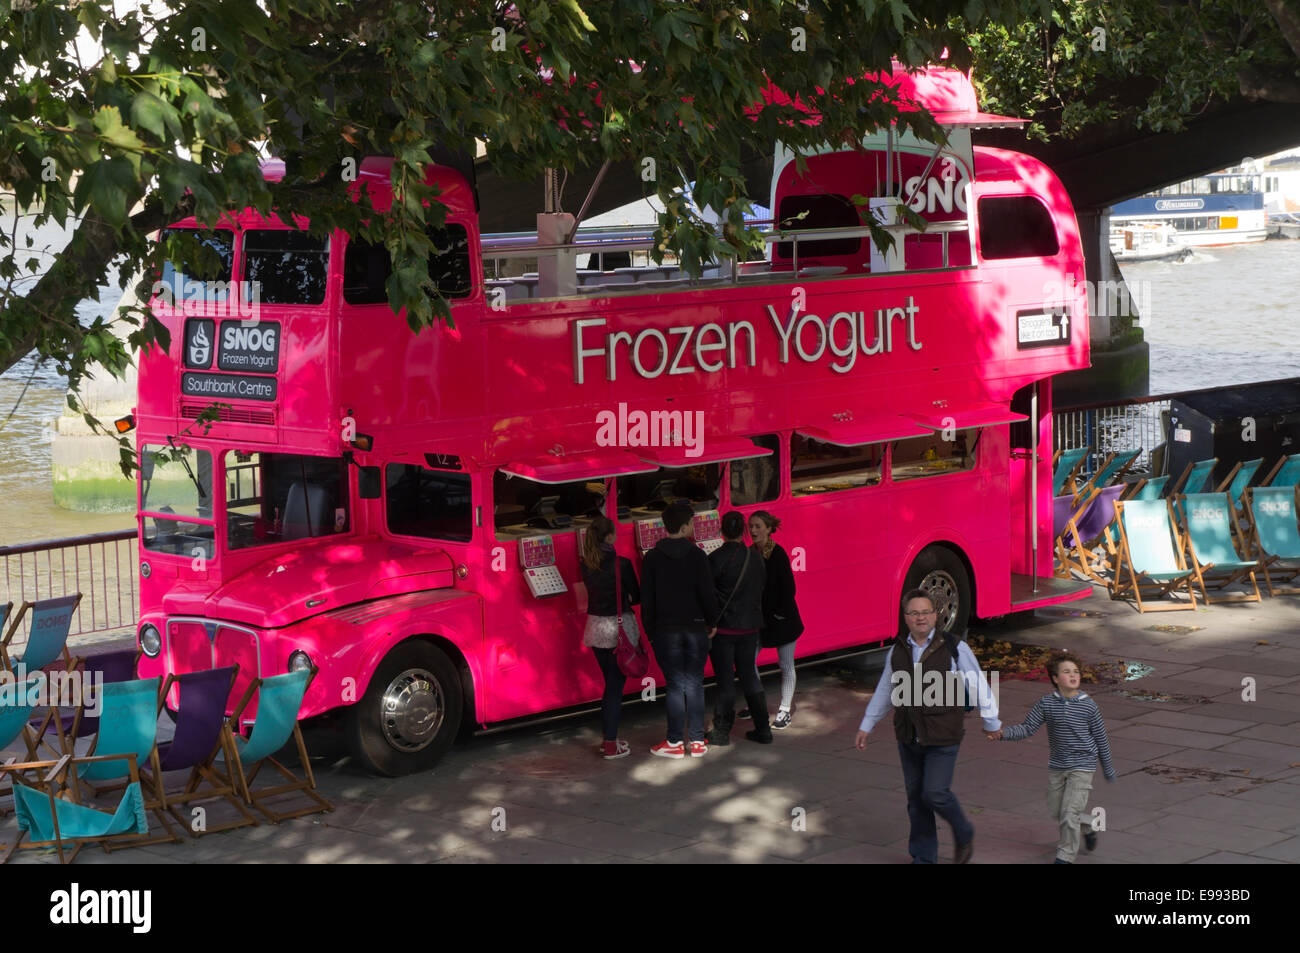 Un bus à impériale rose Snog yogourt congelé de vente sur la rive sud de Londres. Banque D'Images